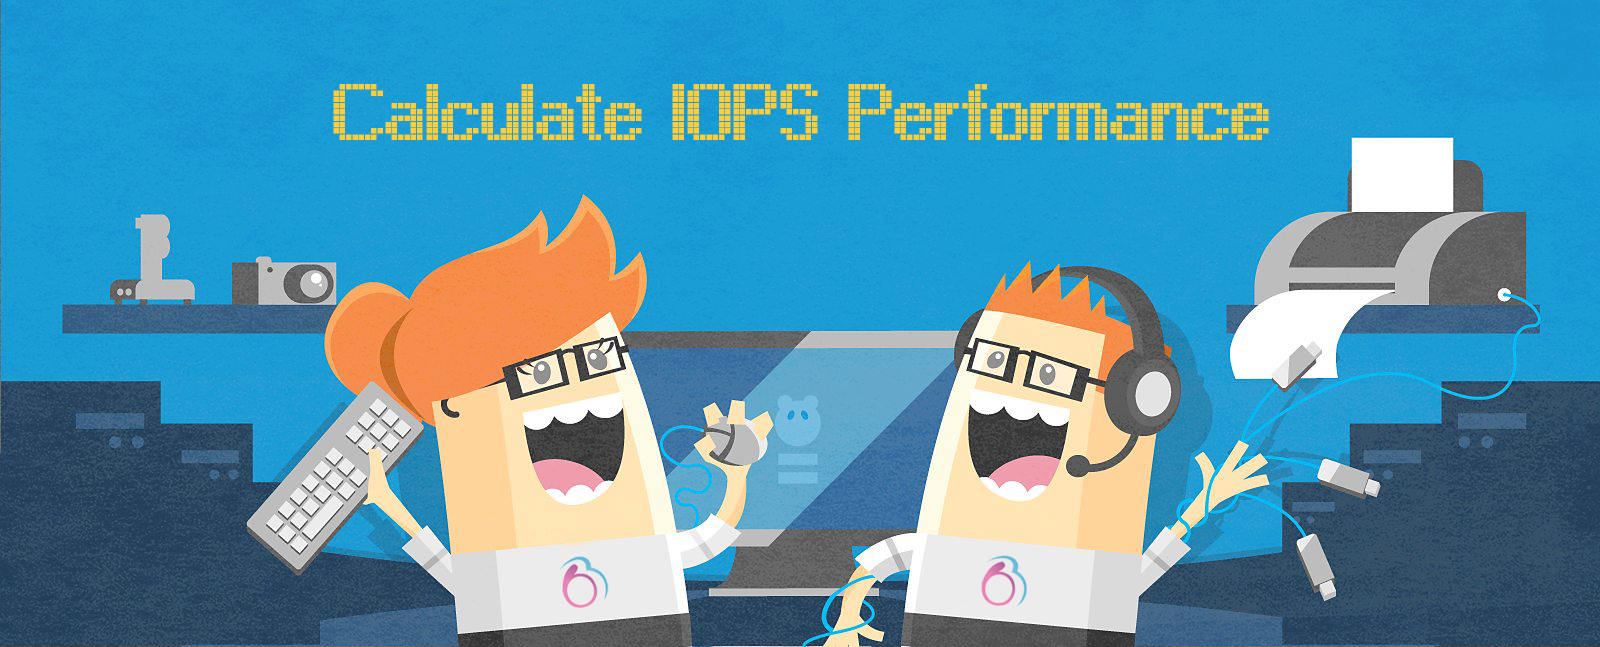 iops_performance